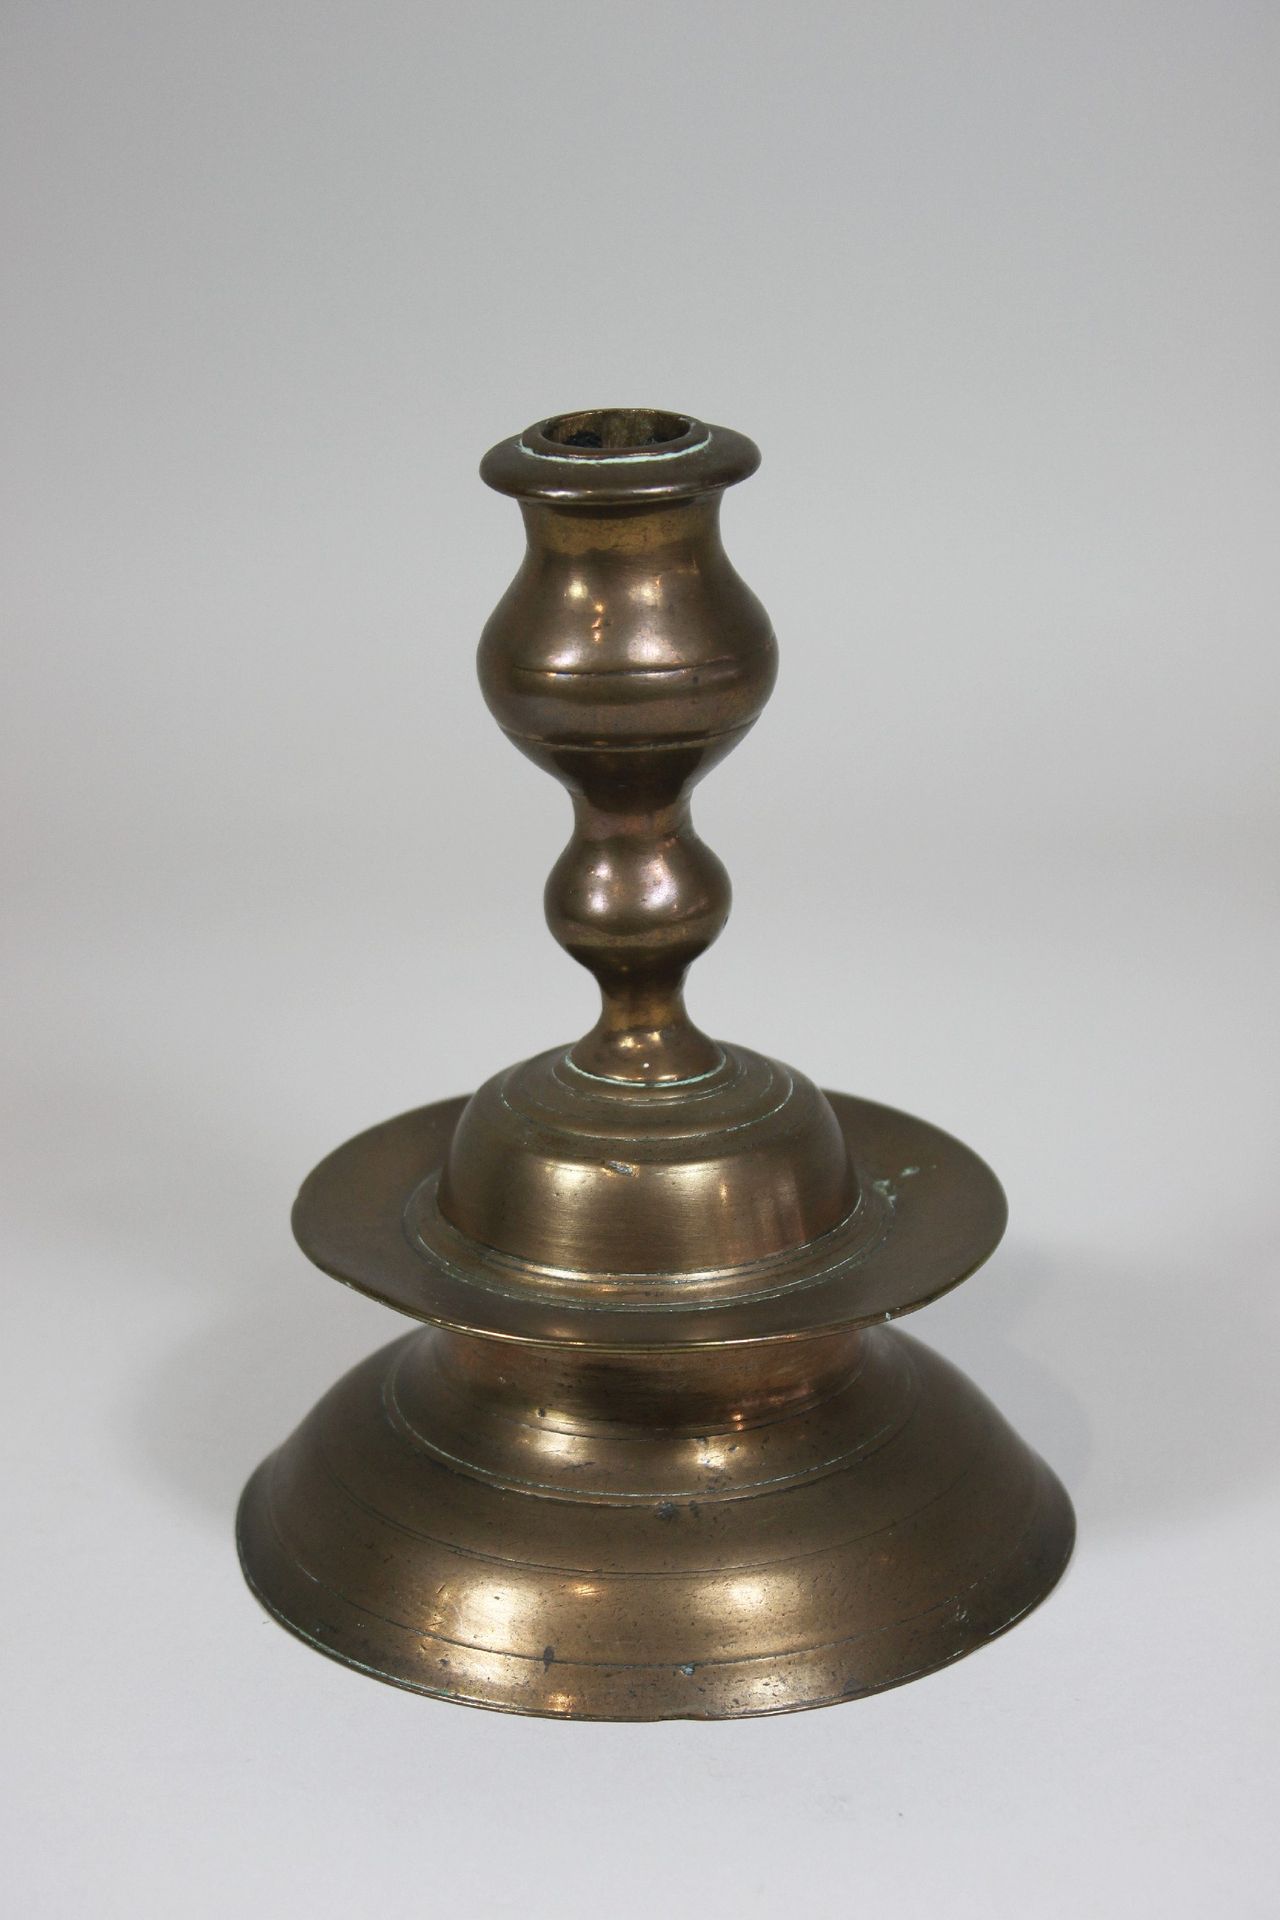 Glockenleuchter, um 1700, Süddeutschland 钟形烛台，约1700年，青铜，南德，铸造，单火。高：16厘米。状况良好，与年龄&hellip;